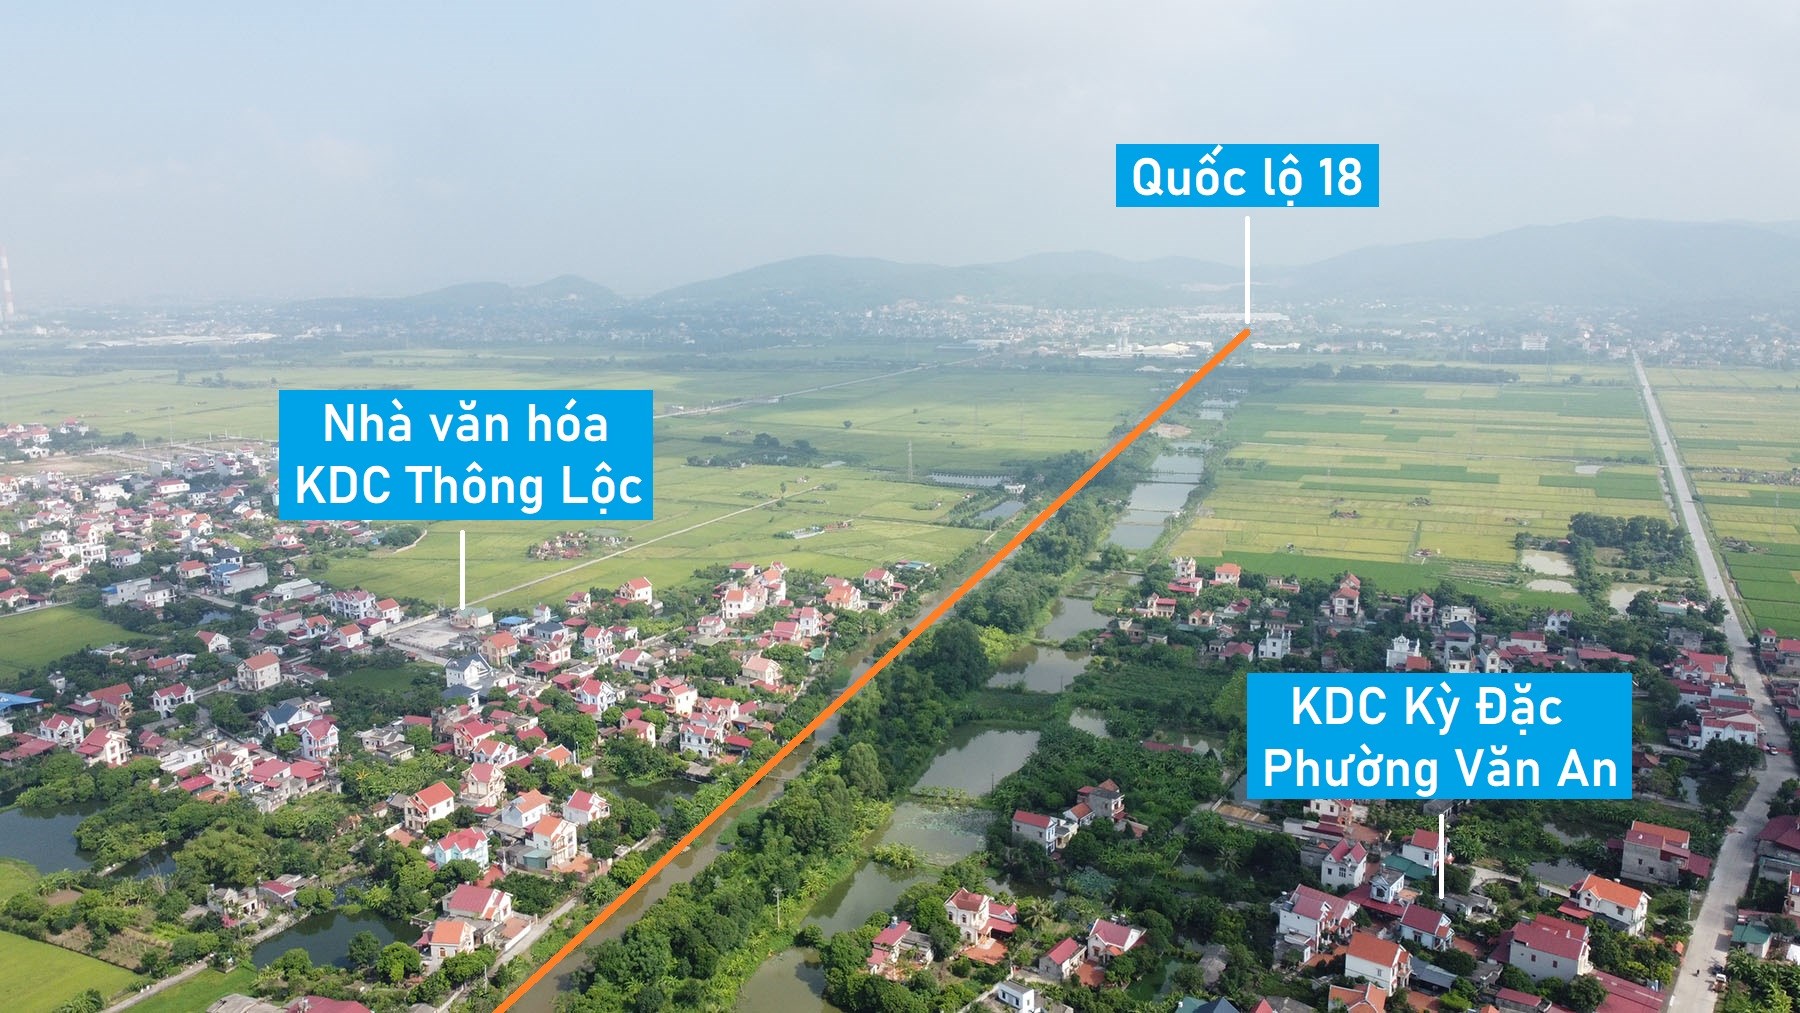 Toàn cảnh vị trí quy hoạch xây cầu vượt sông Kinh Thầy nối TP Chí Linh với huyện Nam Sách, Hải Dương